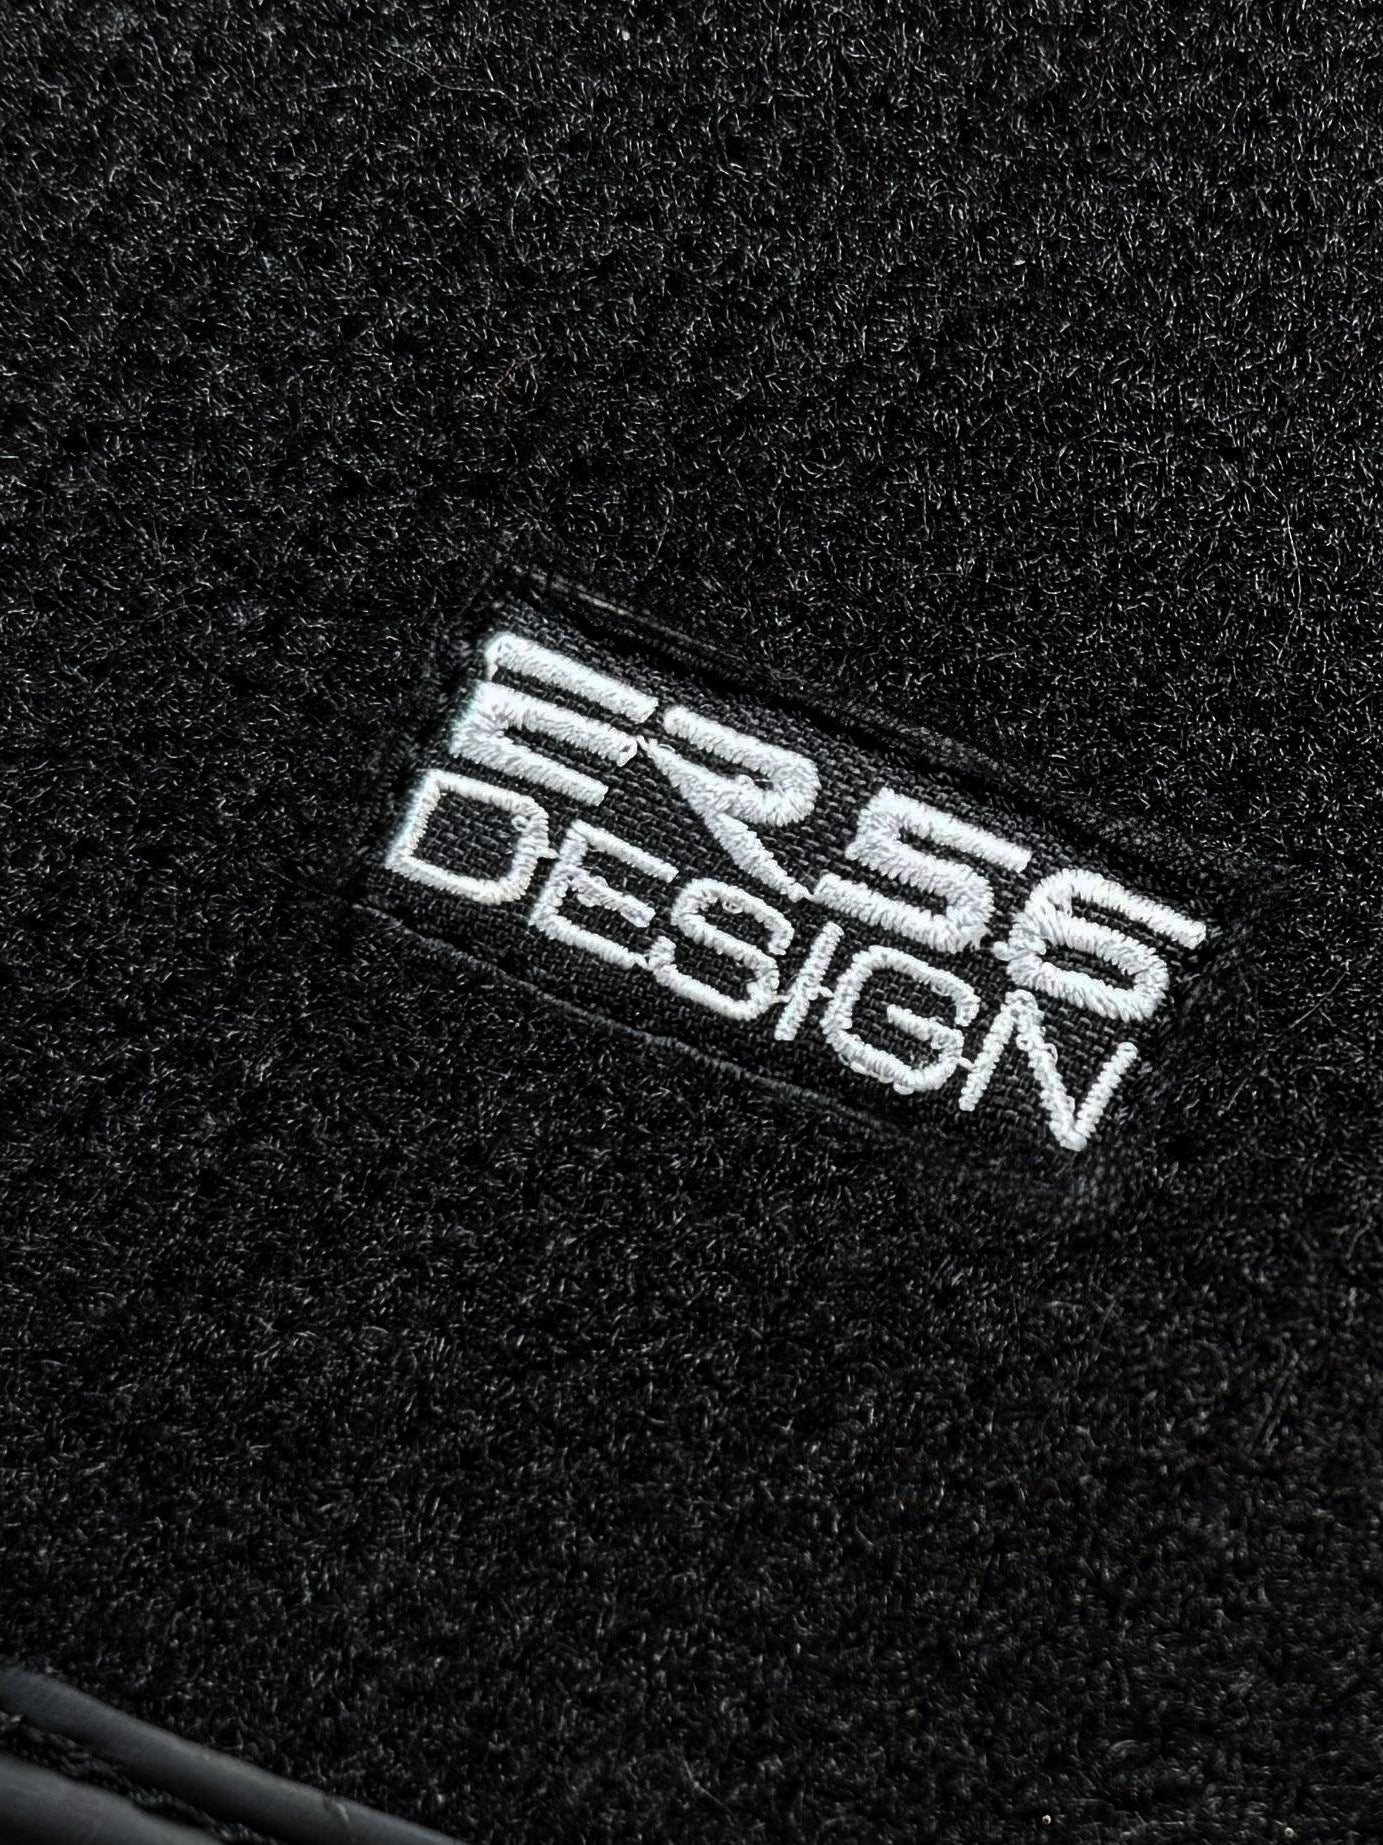 Black Sheepskin Floor Mats For BMW M3 E93 ER56 Design